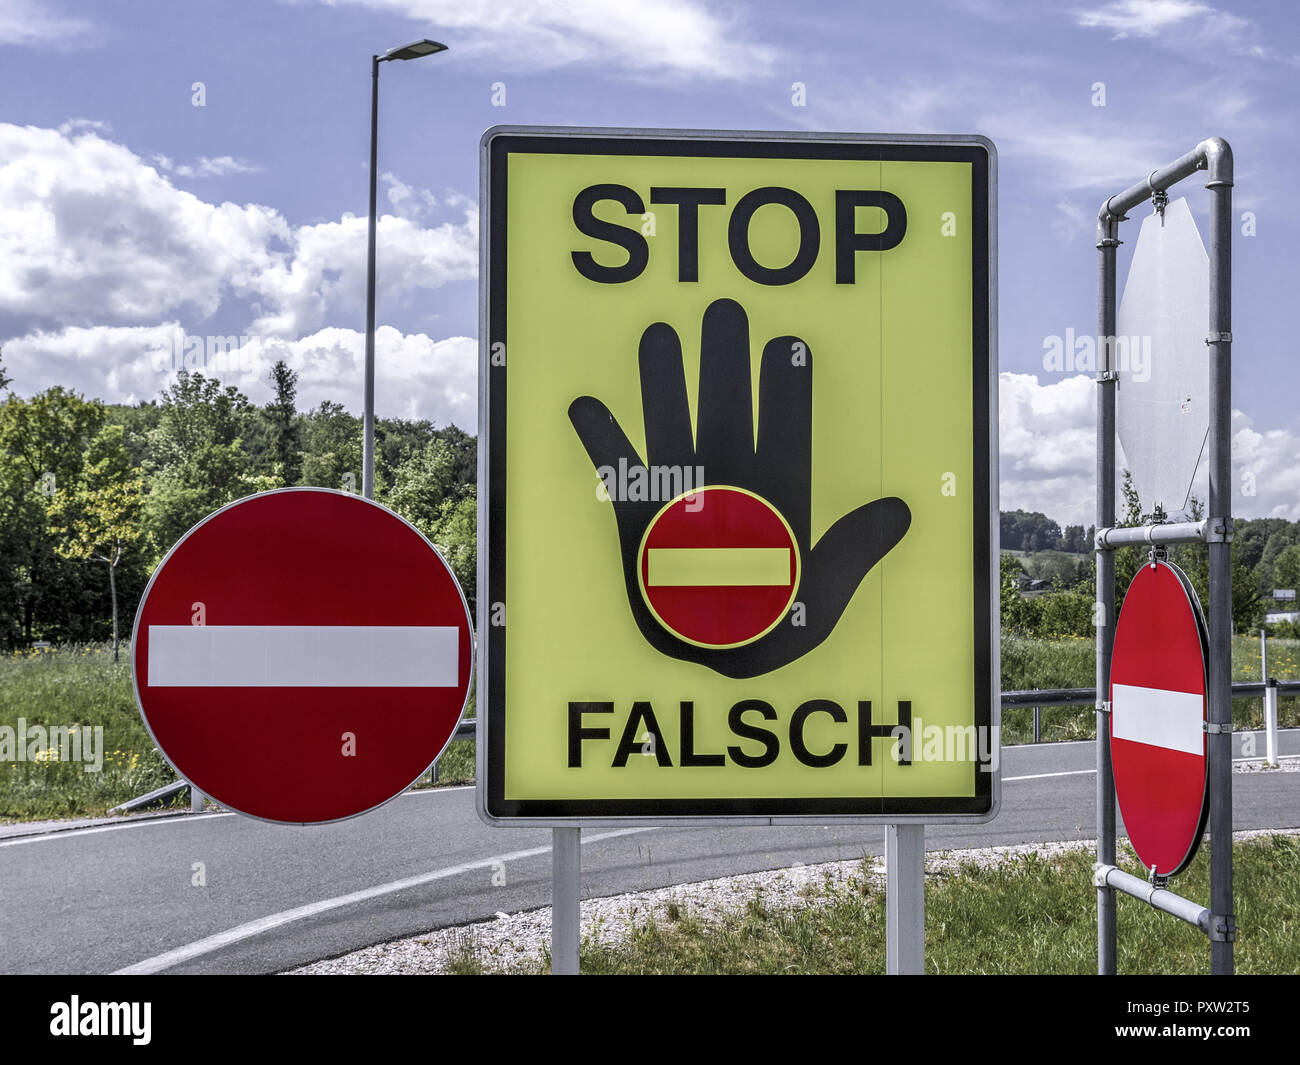 Signe de la circulation s'arrêter, faux sens, Autriche Banque D'Images